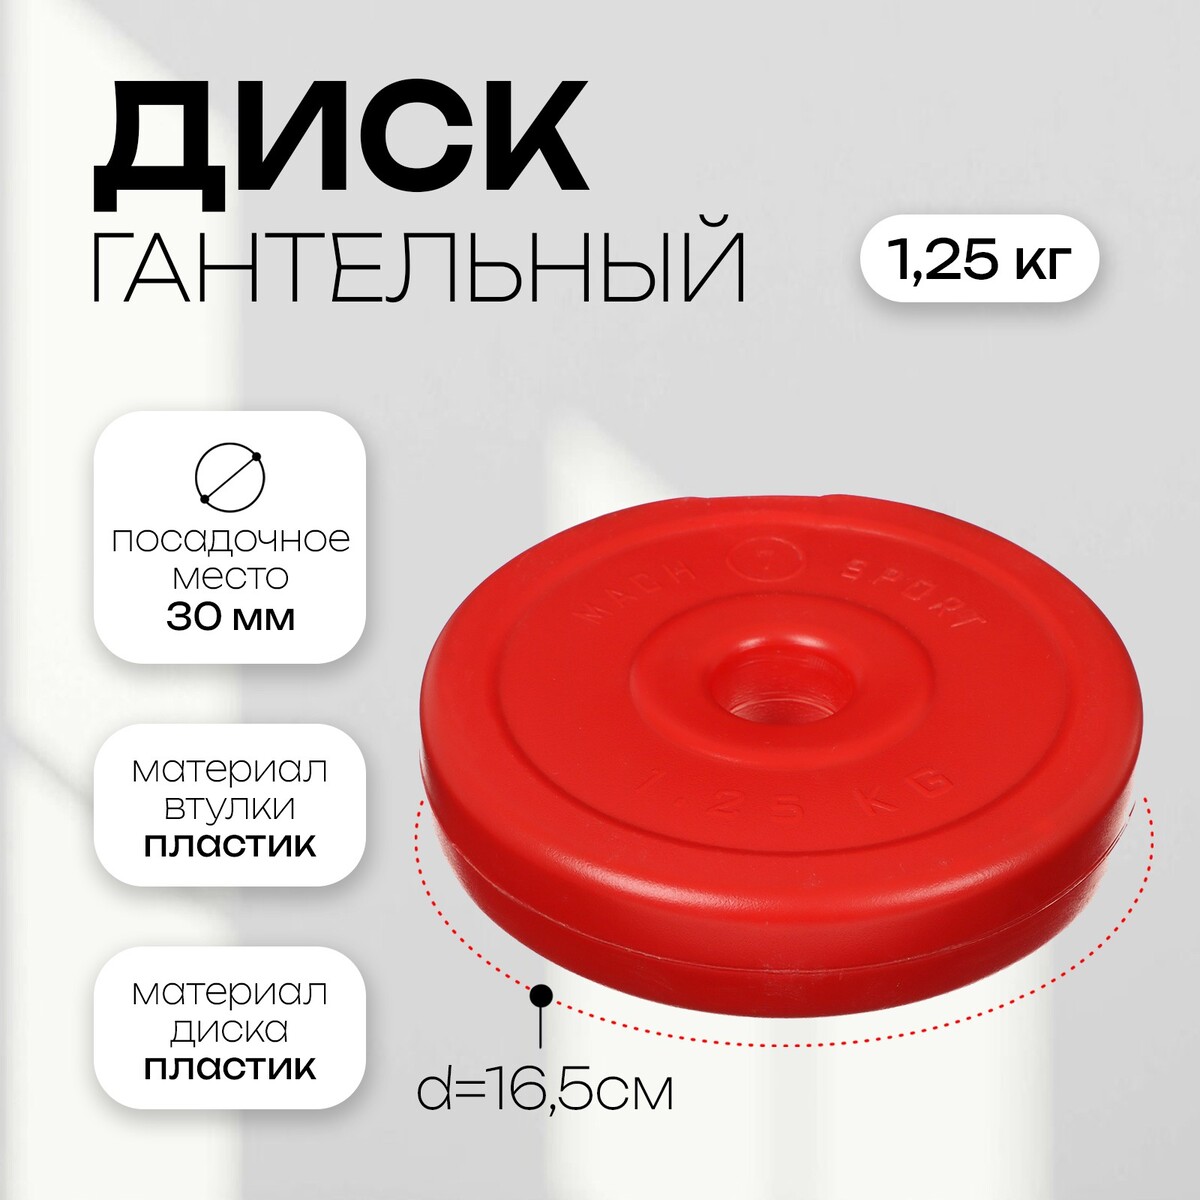 Диск гантельный 1,25 кг, d=30 мм, цвет красный гантельный набор 10кг с проставкой sportex разборный 2х5кг пластик цемент e36827 dbz 10